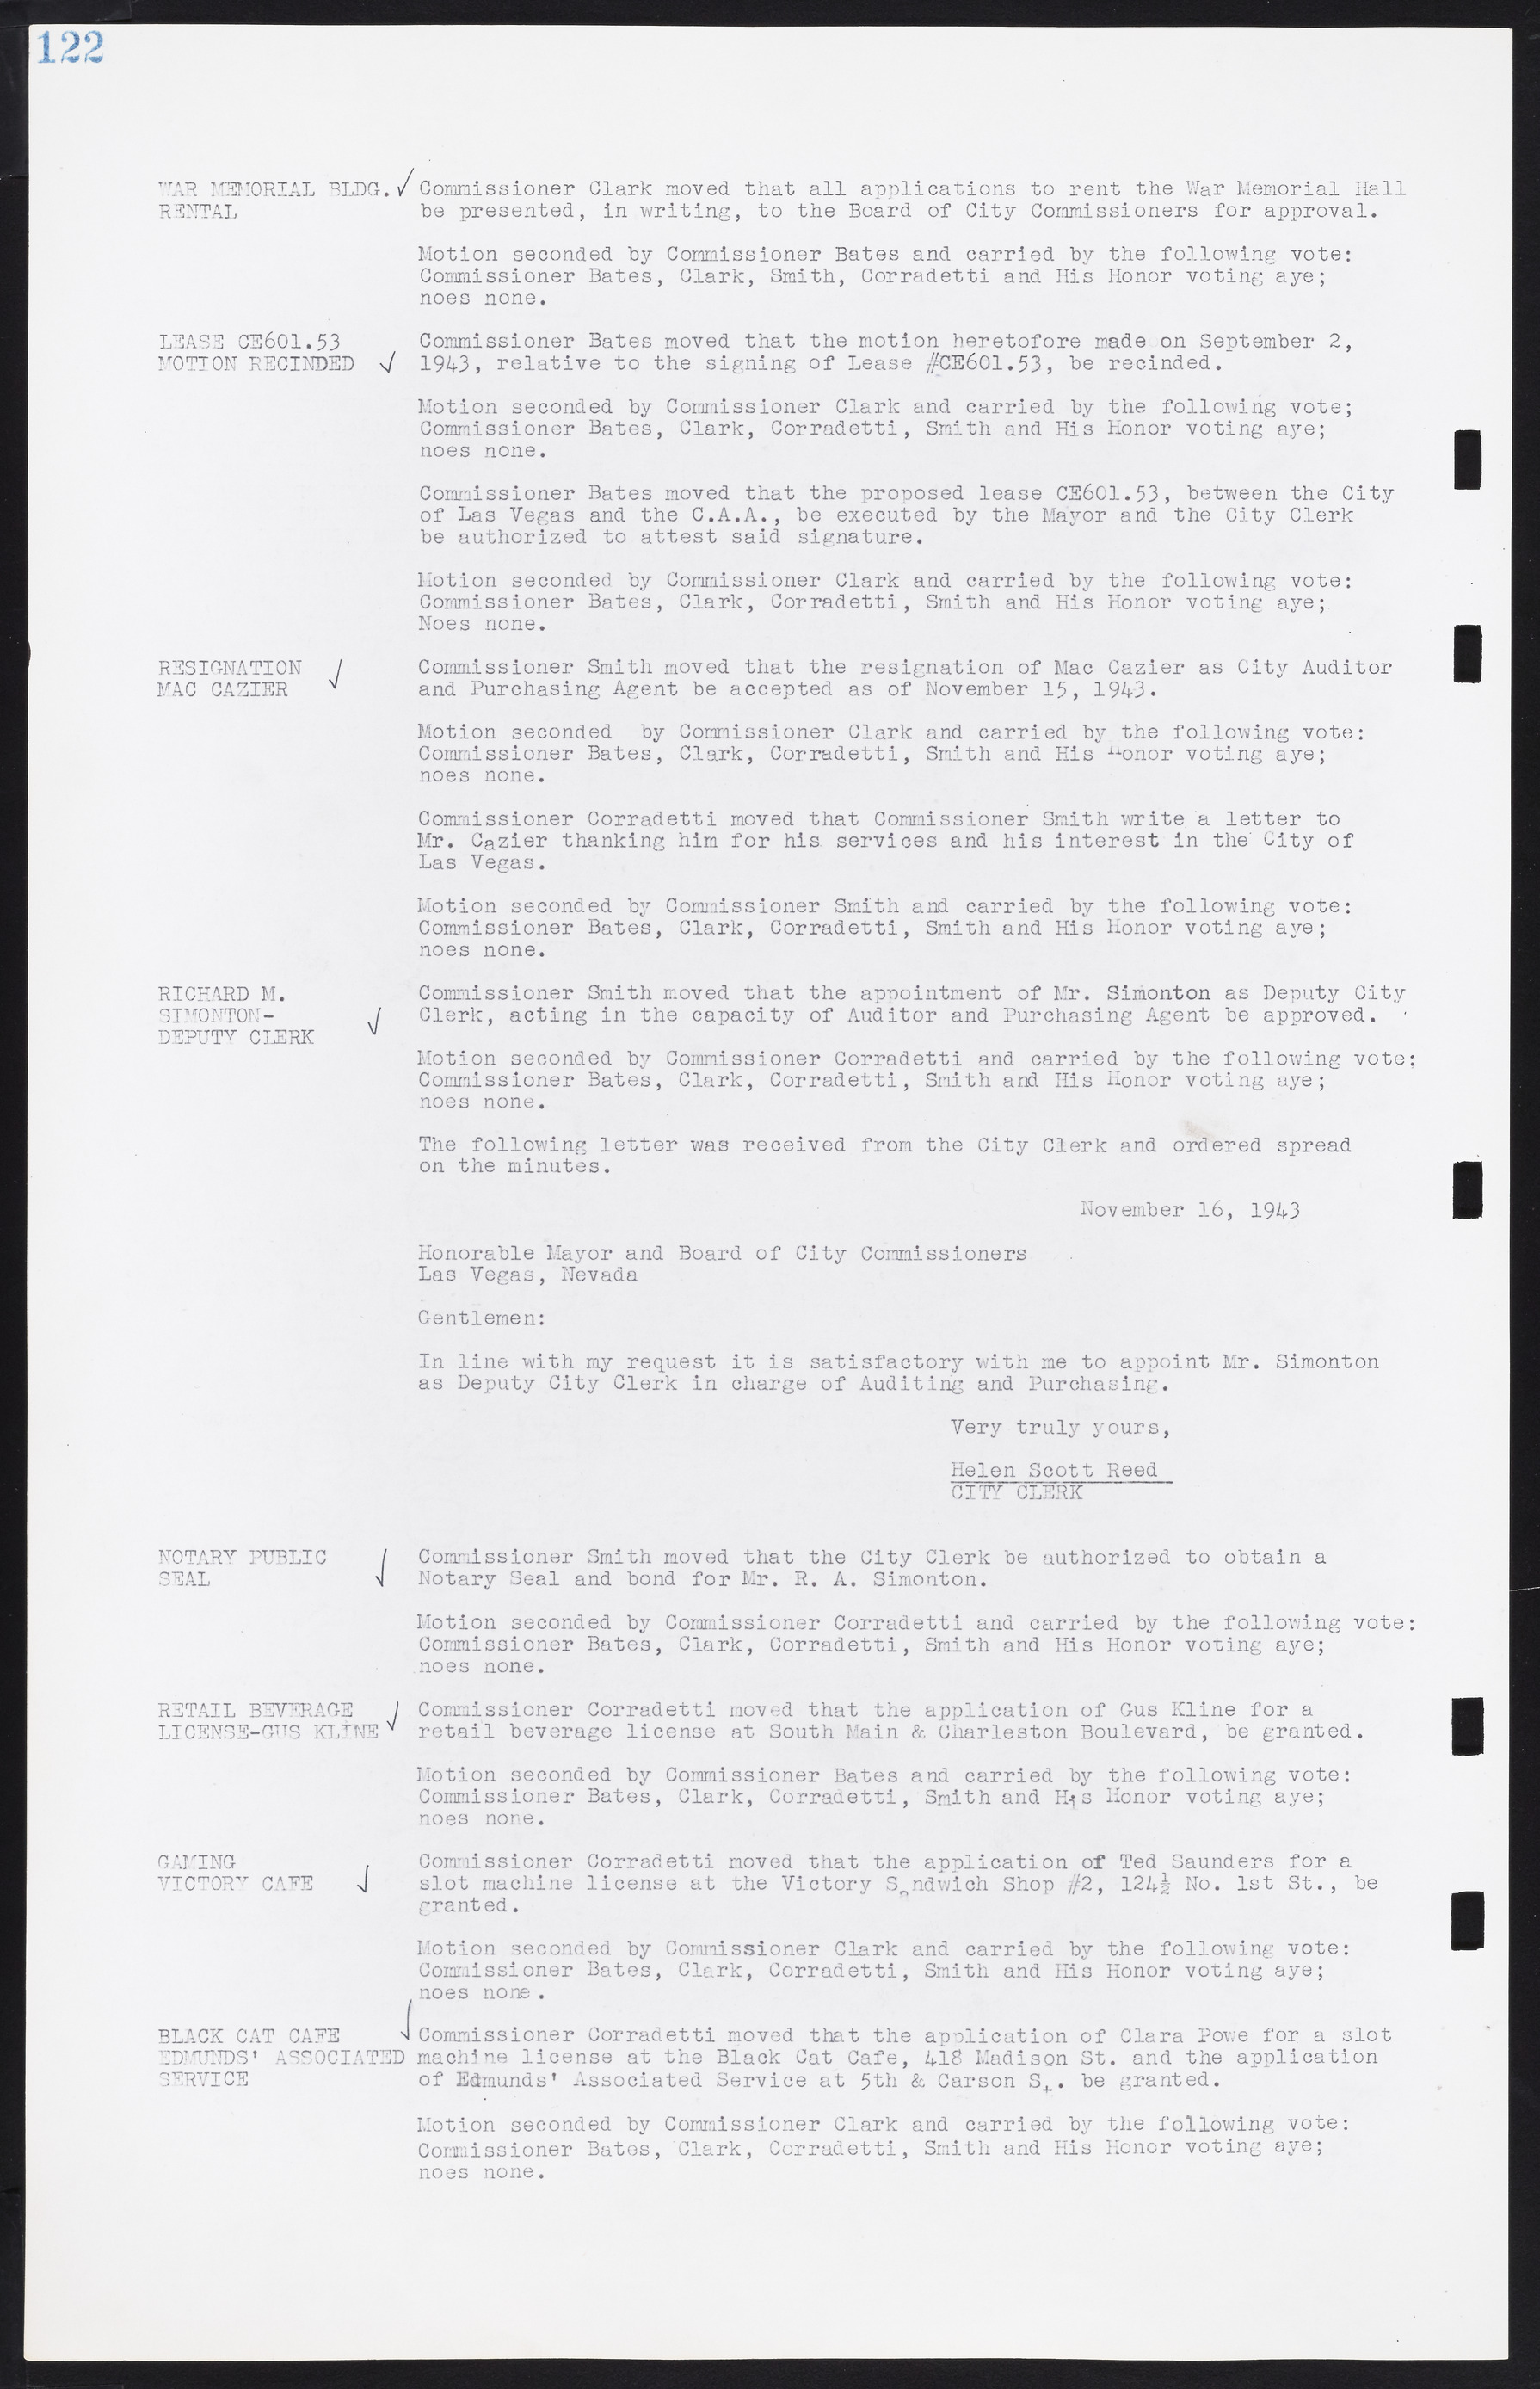 Las Vegas City Commission Minutes, August 11, 1942 to December 30, 1946, lvc000005-136